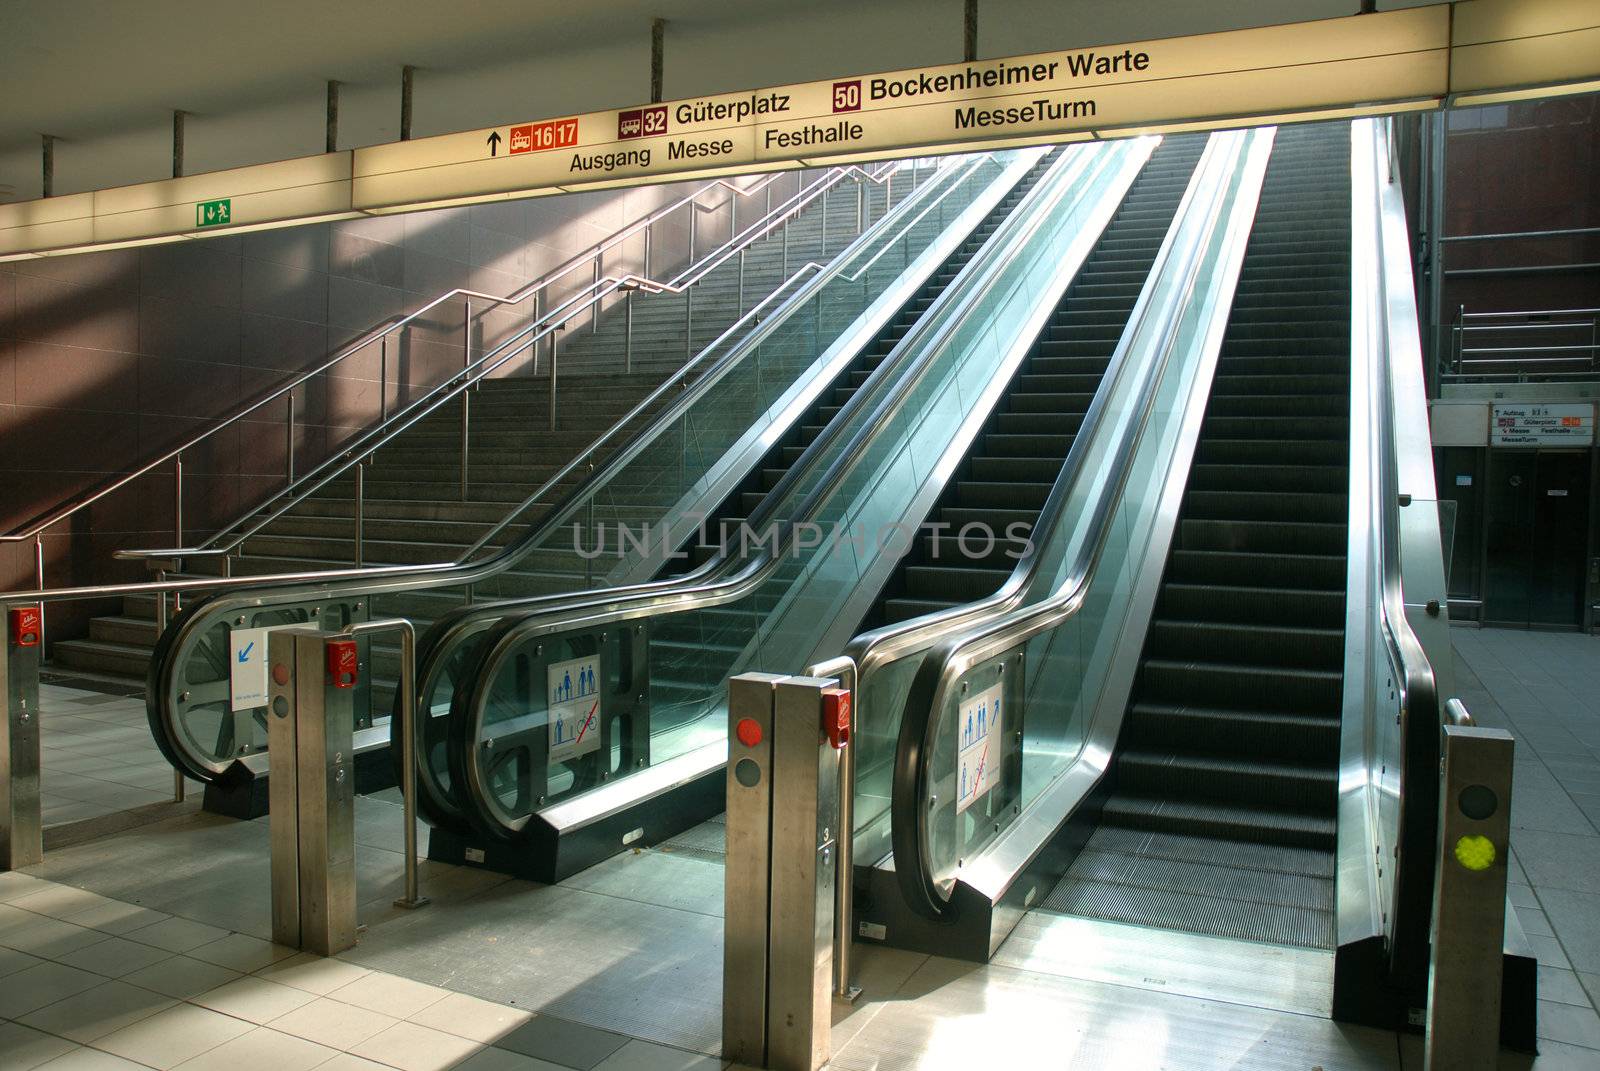 Moving escalators entrance.